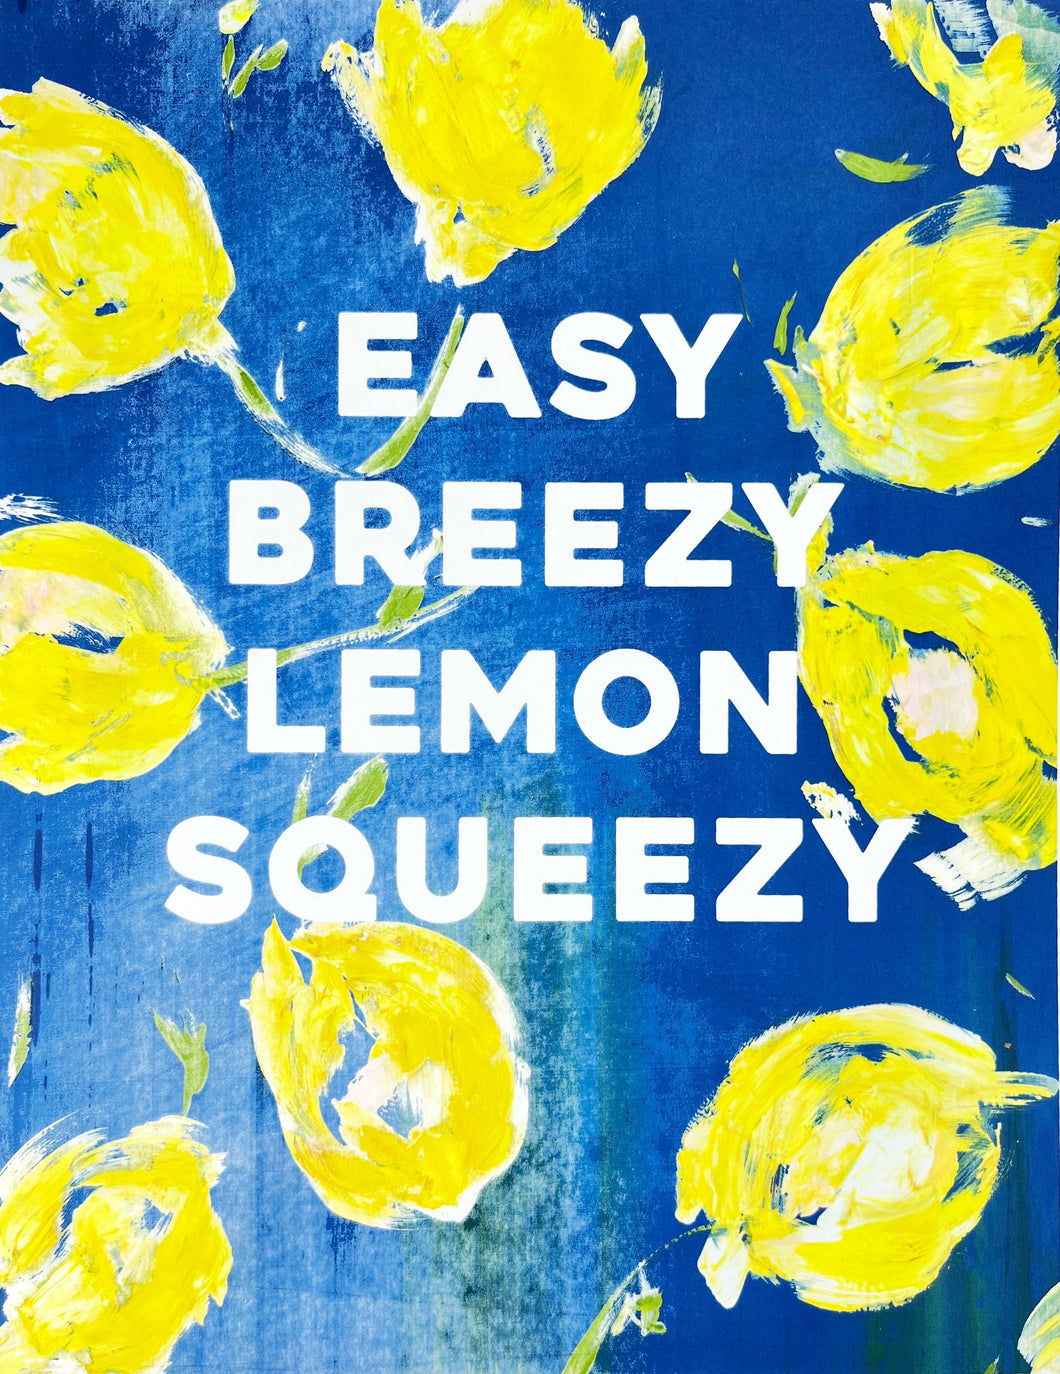 Easy Breezy Lemon Squeezy 16 - cobalt blues